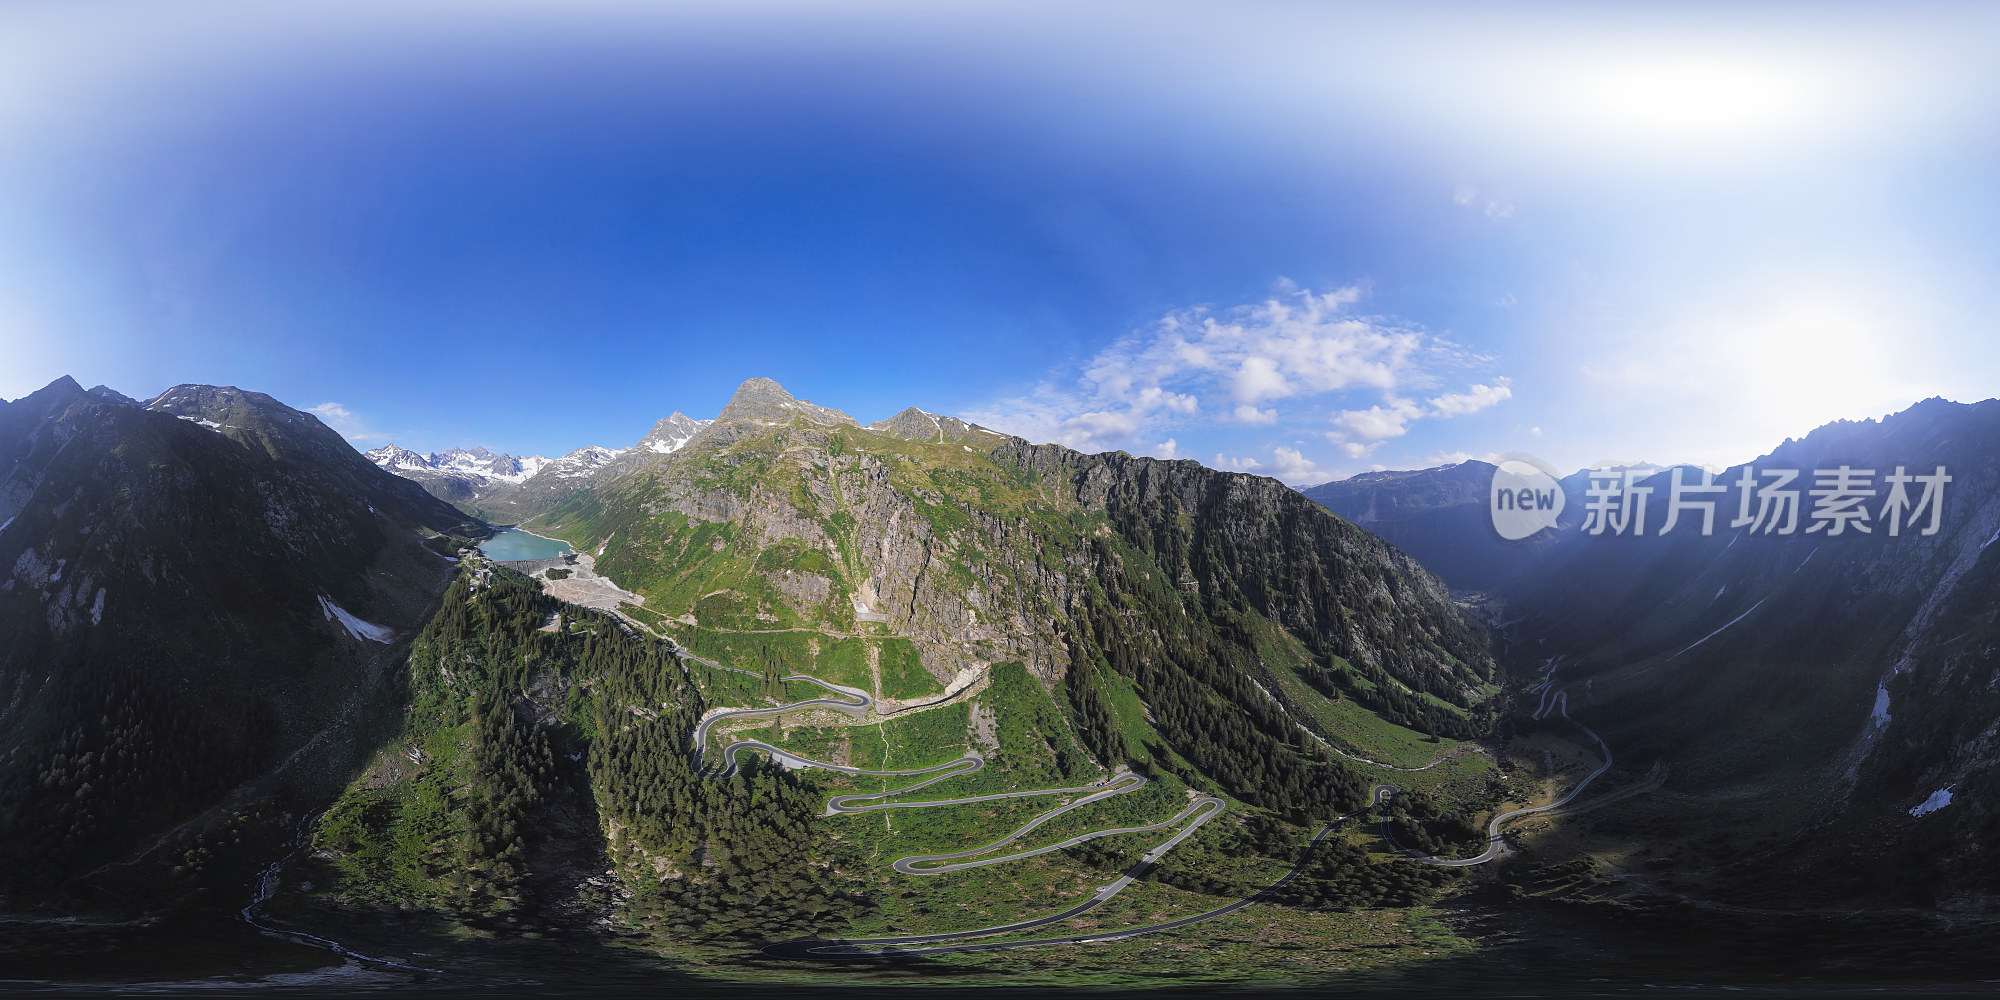 奥地利Vorarlberg的Silvretta-Bielerhohe高山公路的360度x180度球面(等矩形)空中全景图。